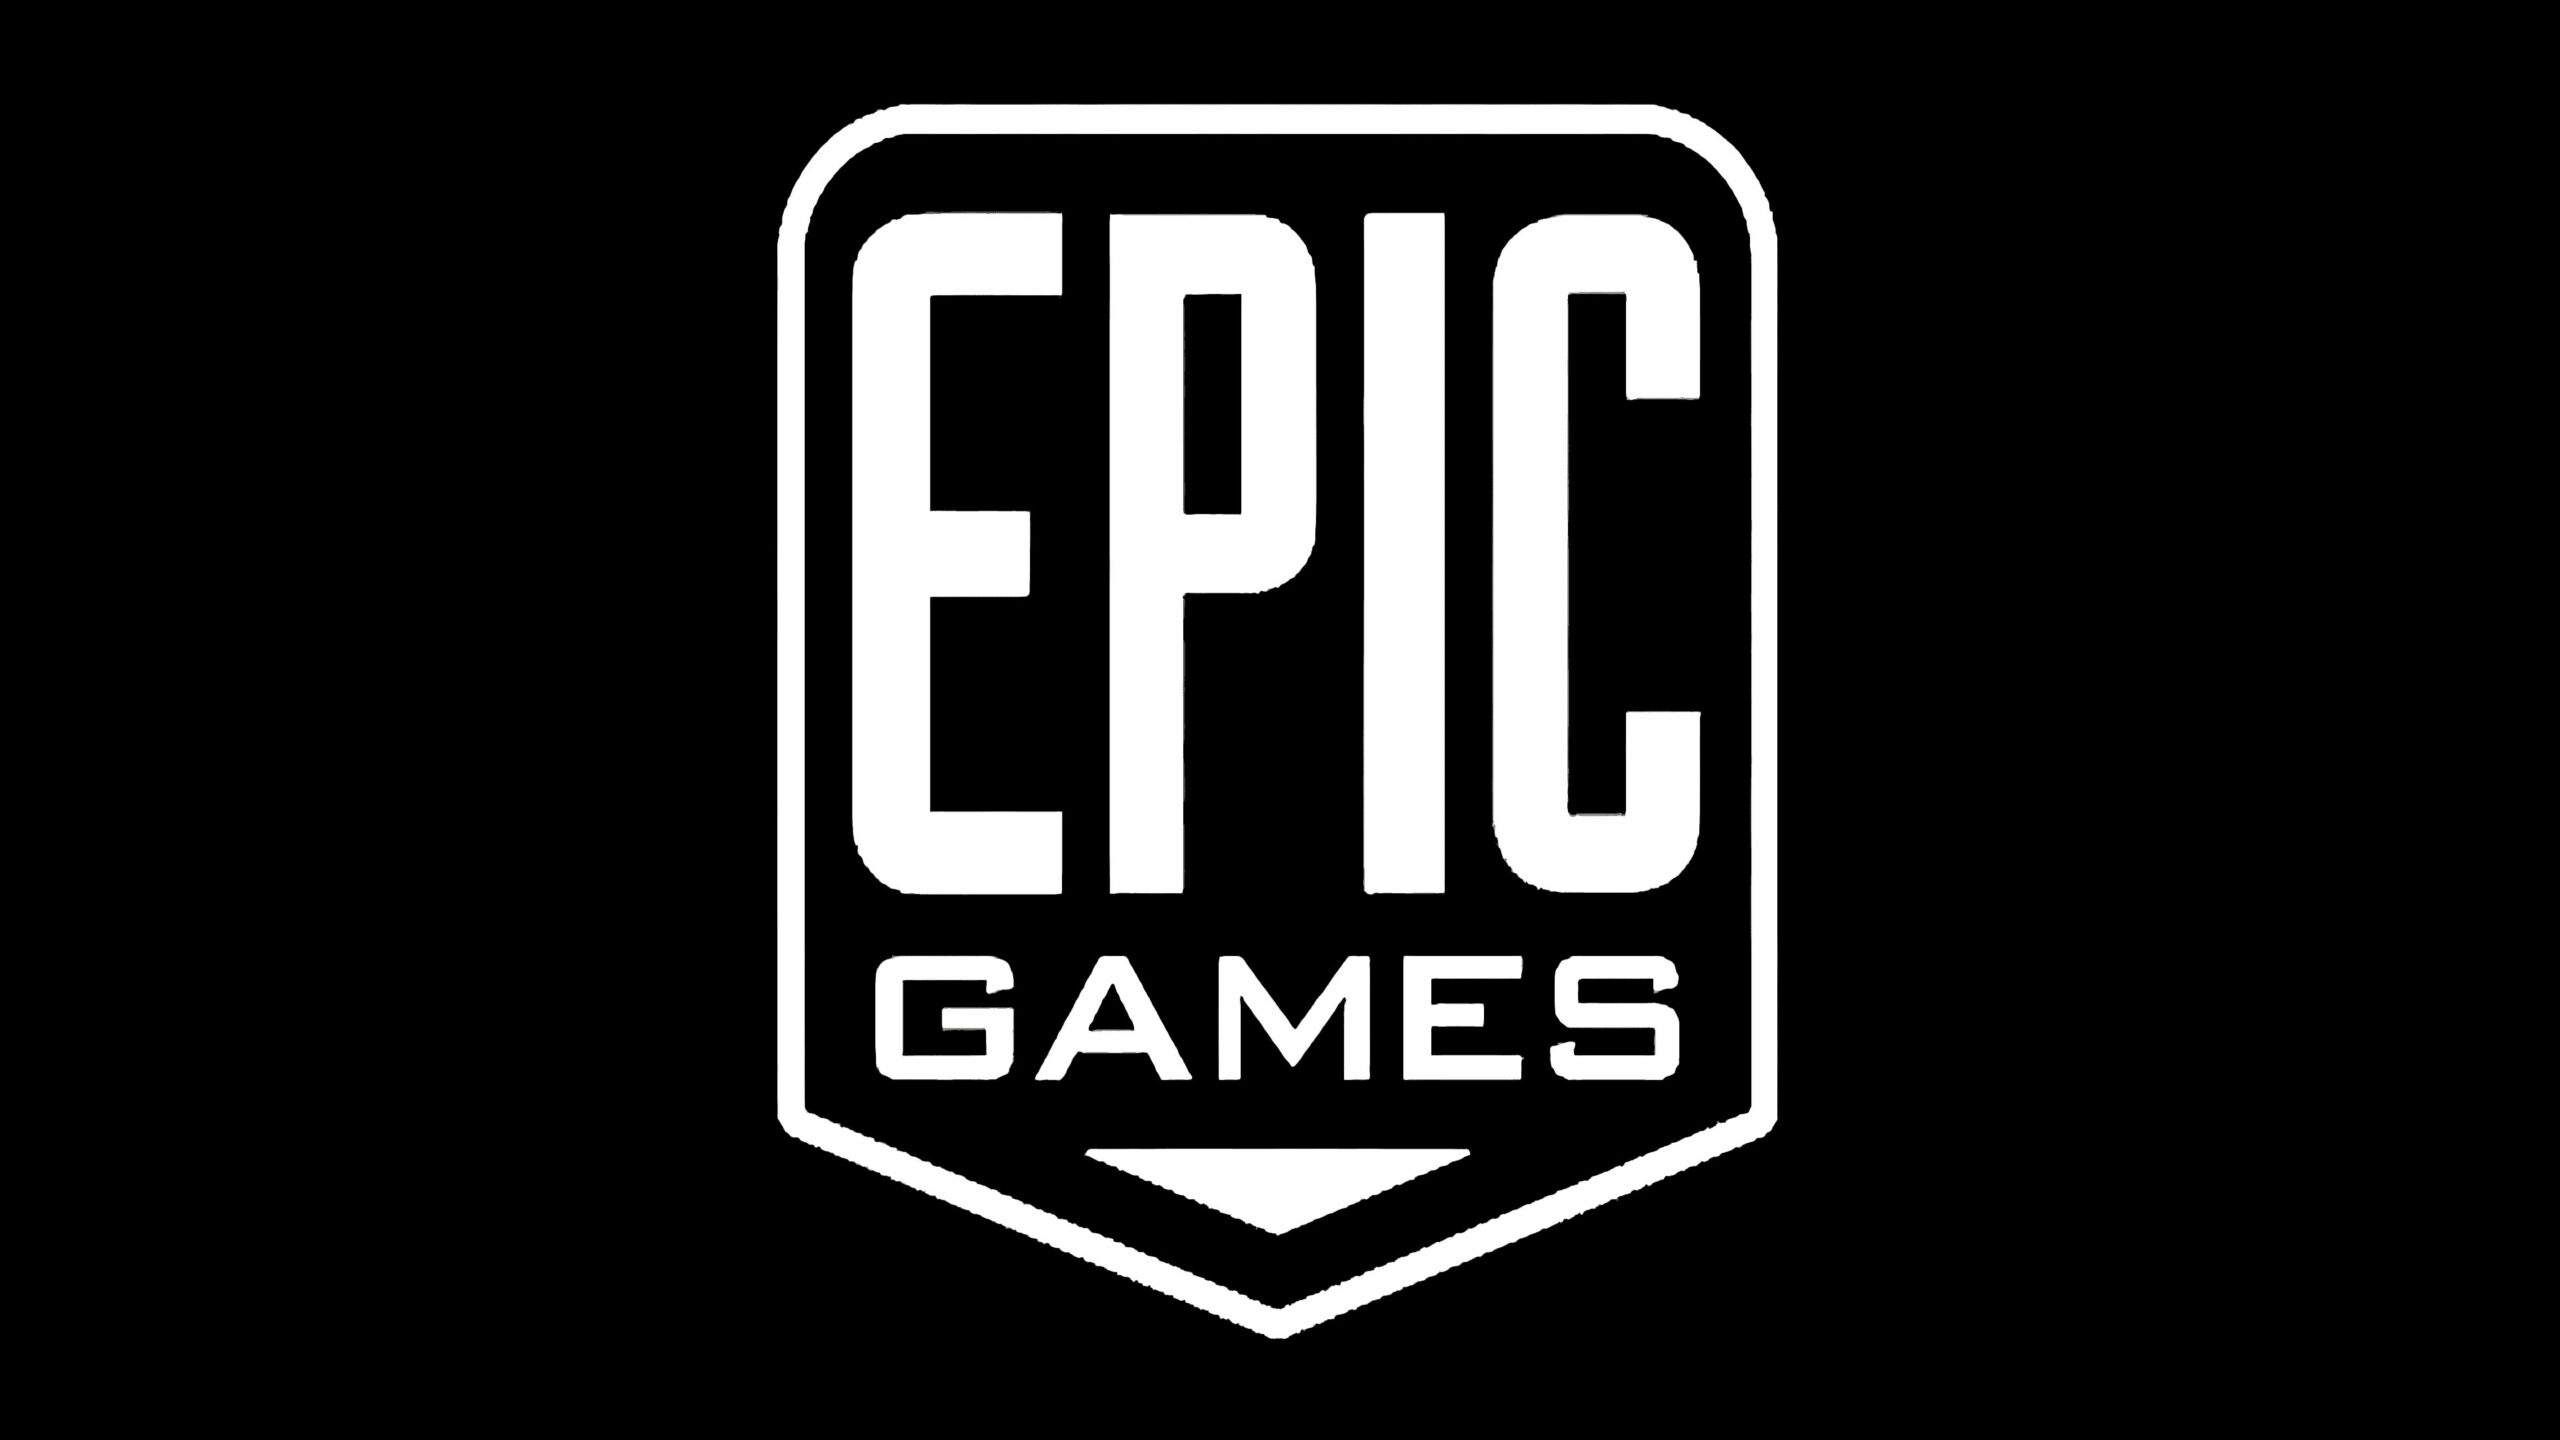 Eis os próximos jogos gratuitos na Epic Games Store